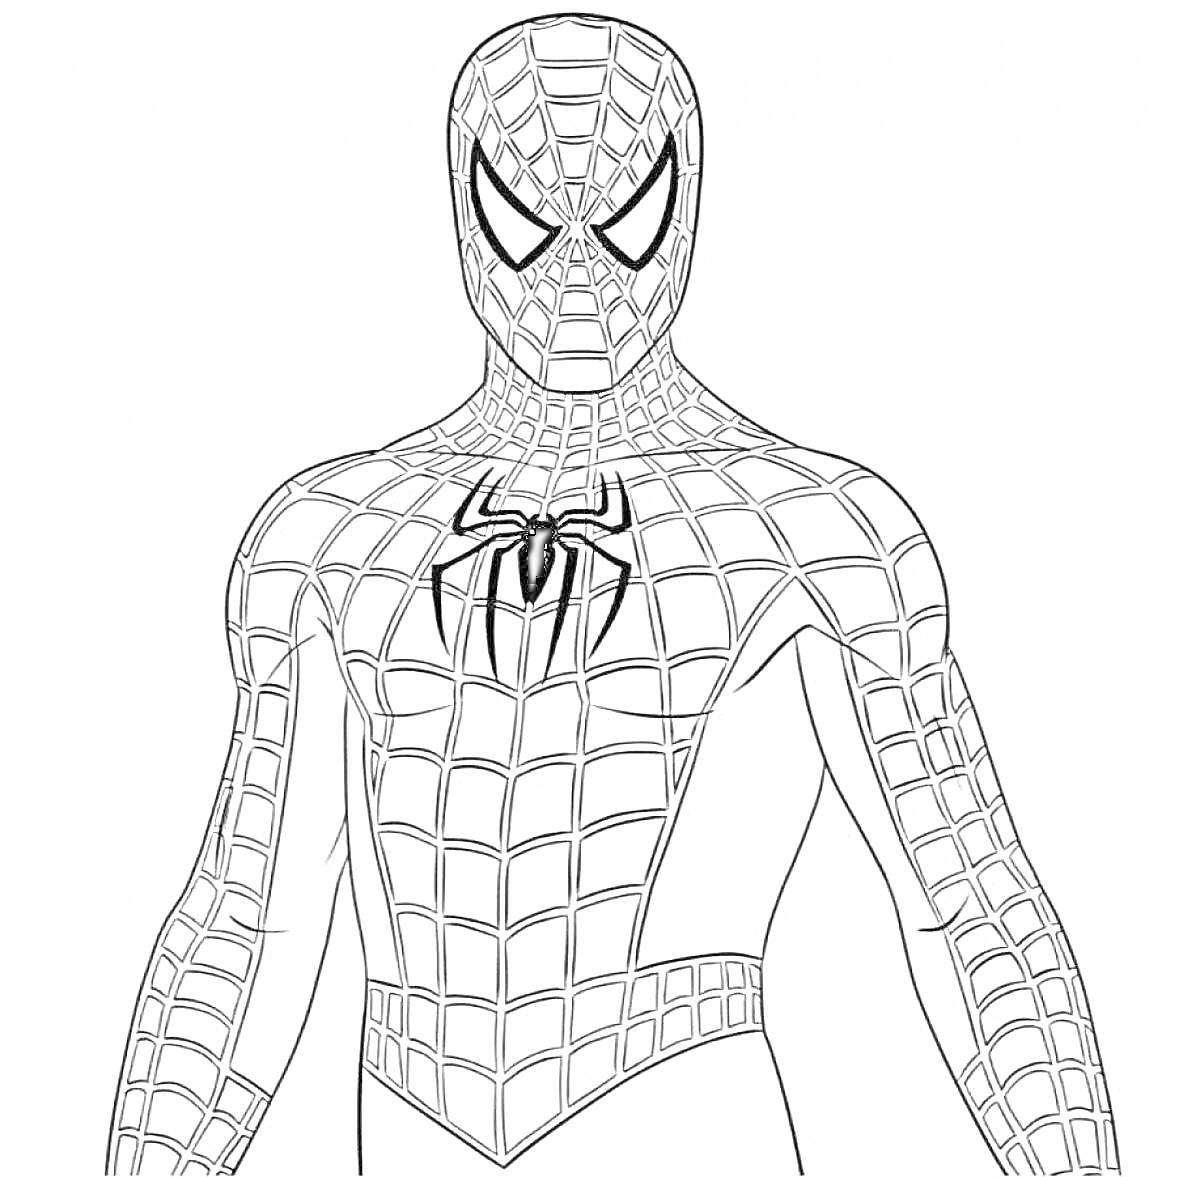 Человек-паук в костюме с паутиной и пауком на груди